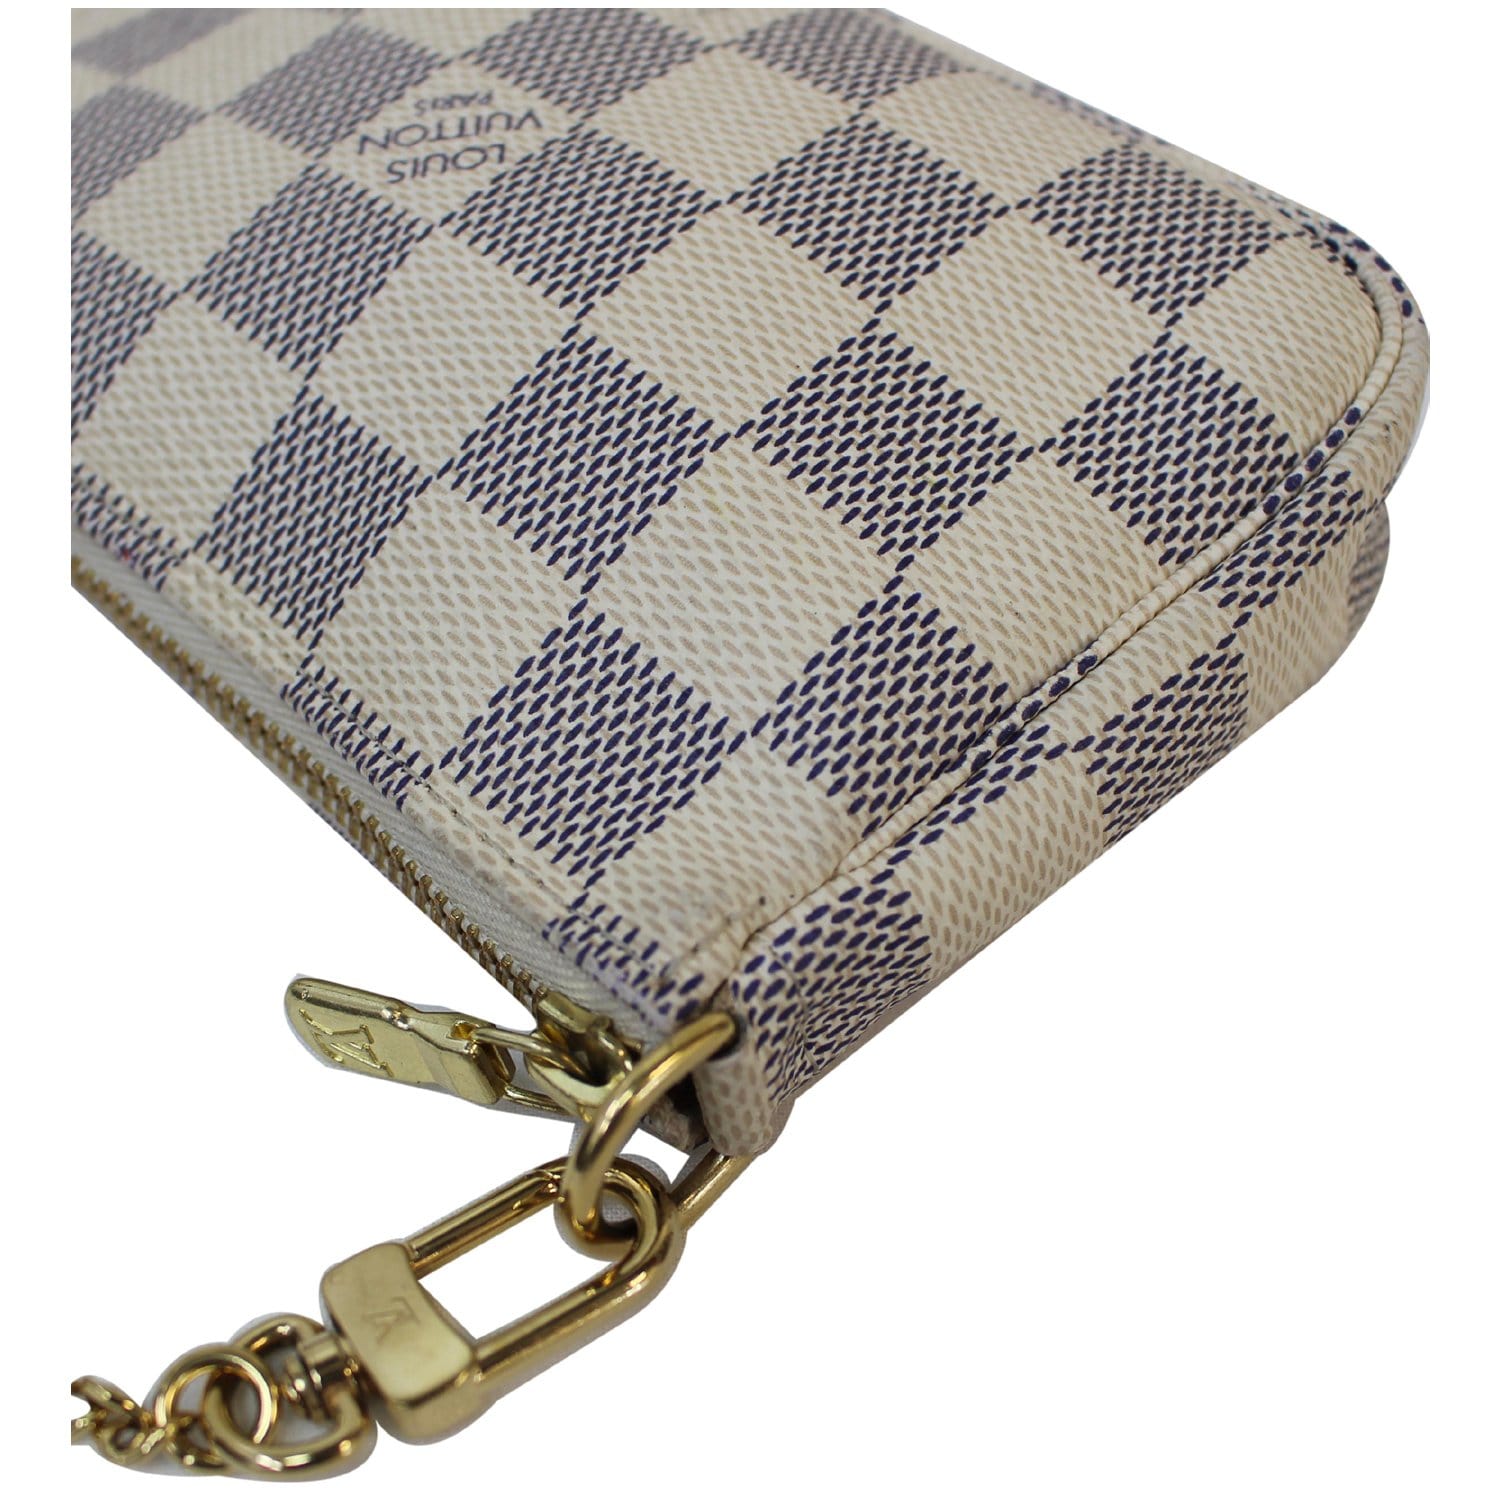 Louis Vuitton Damier Azur Pochette Accessoires - Neutrals Mini Bags,  Handbags - LOU798600